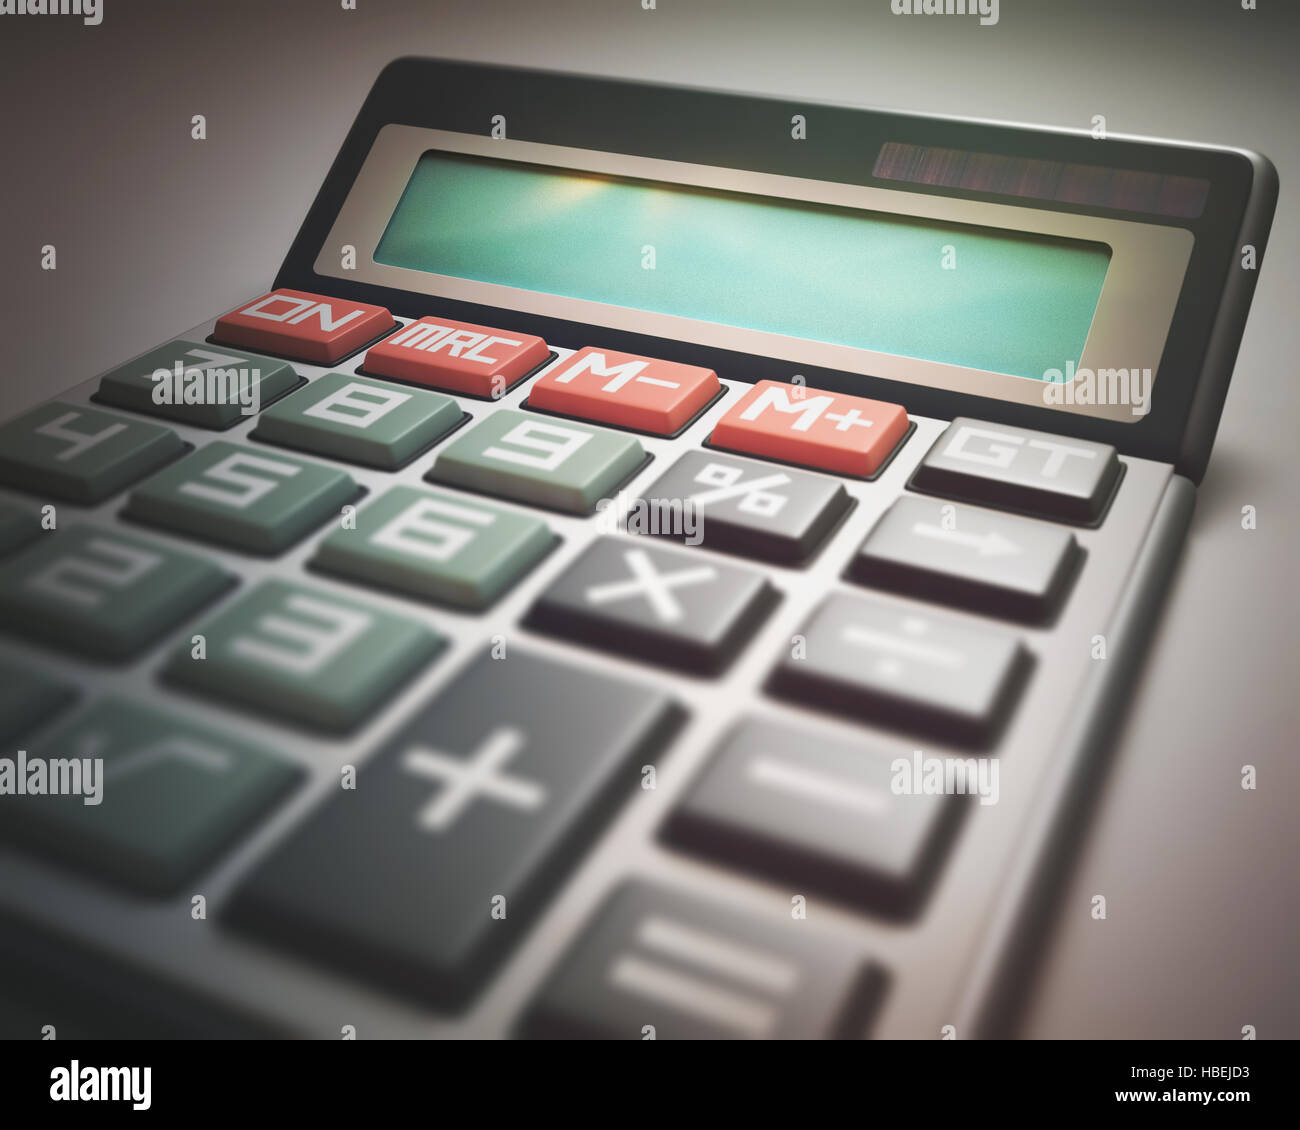 Calculatrice solaire avec affichage numérique vide. Votre texte ou un numéro sur l'écran. Banque D'Images